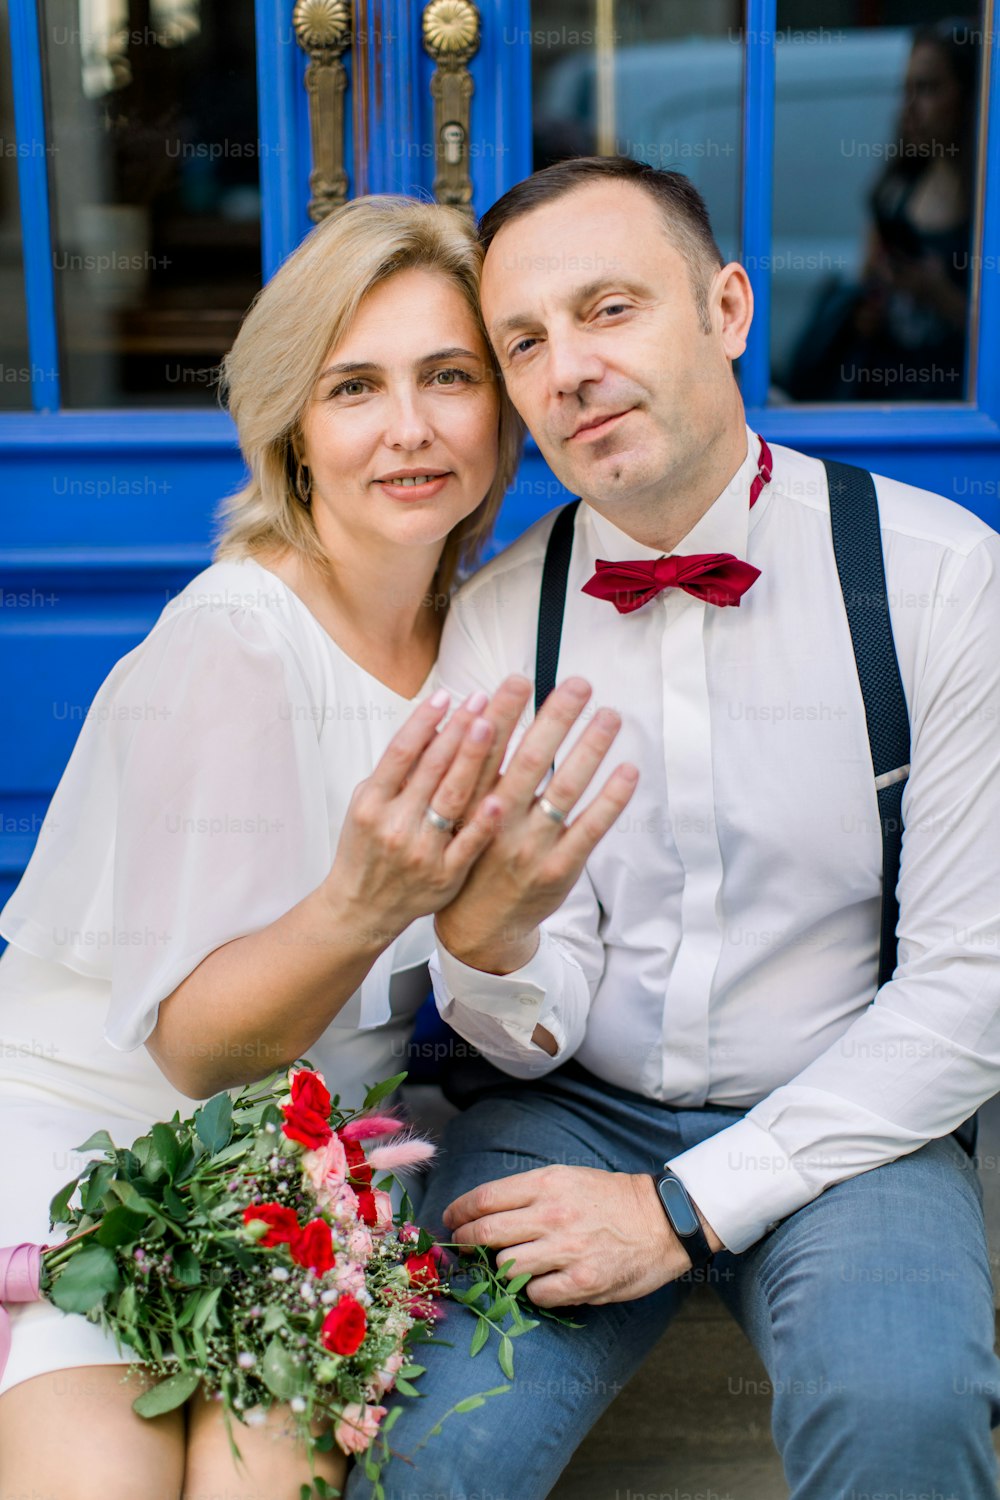 Liebe im Laufe der Jahre. Glücklich lächelndes reifes Paar, das vor blauen Vintage-Türen in der Stadtstraße sitzt und seine Hände mit den Eheringen zeigt. Fokus auf die Gesichter